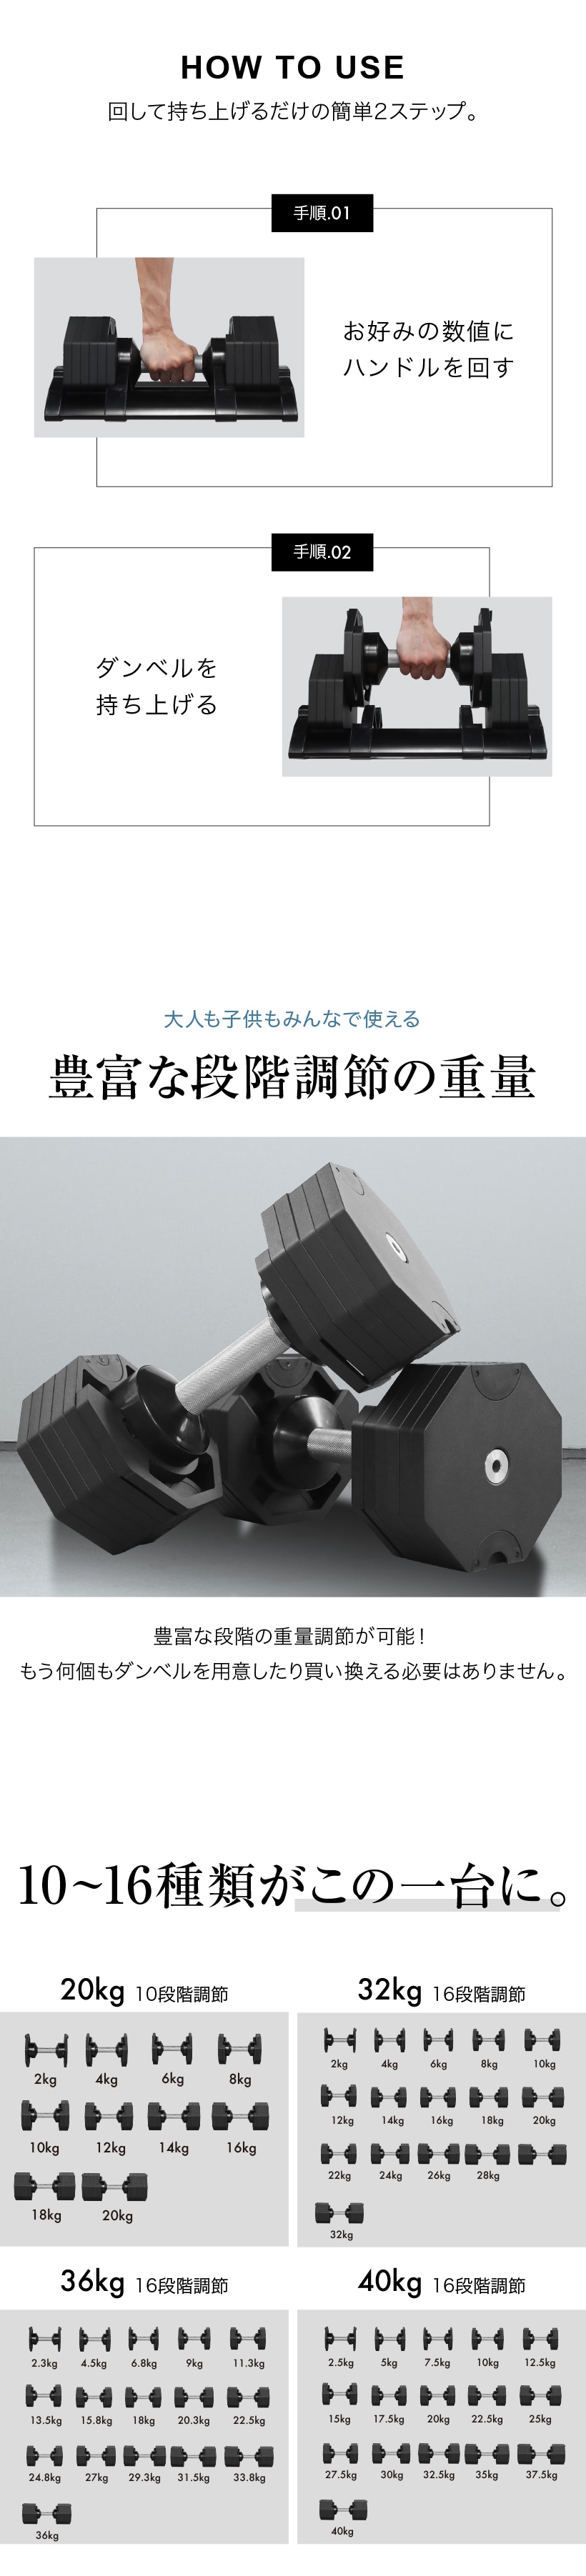 NEW 年モデル 可変式ダンベル kg 2個セット 段階調節 重量調節